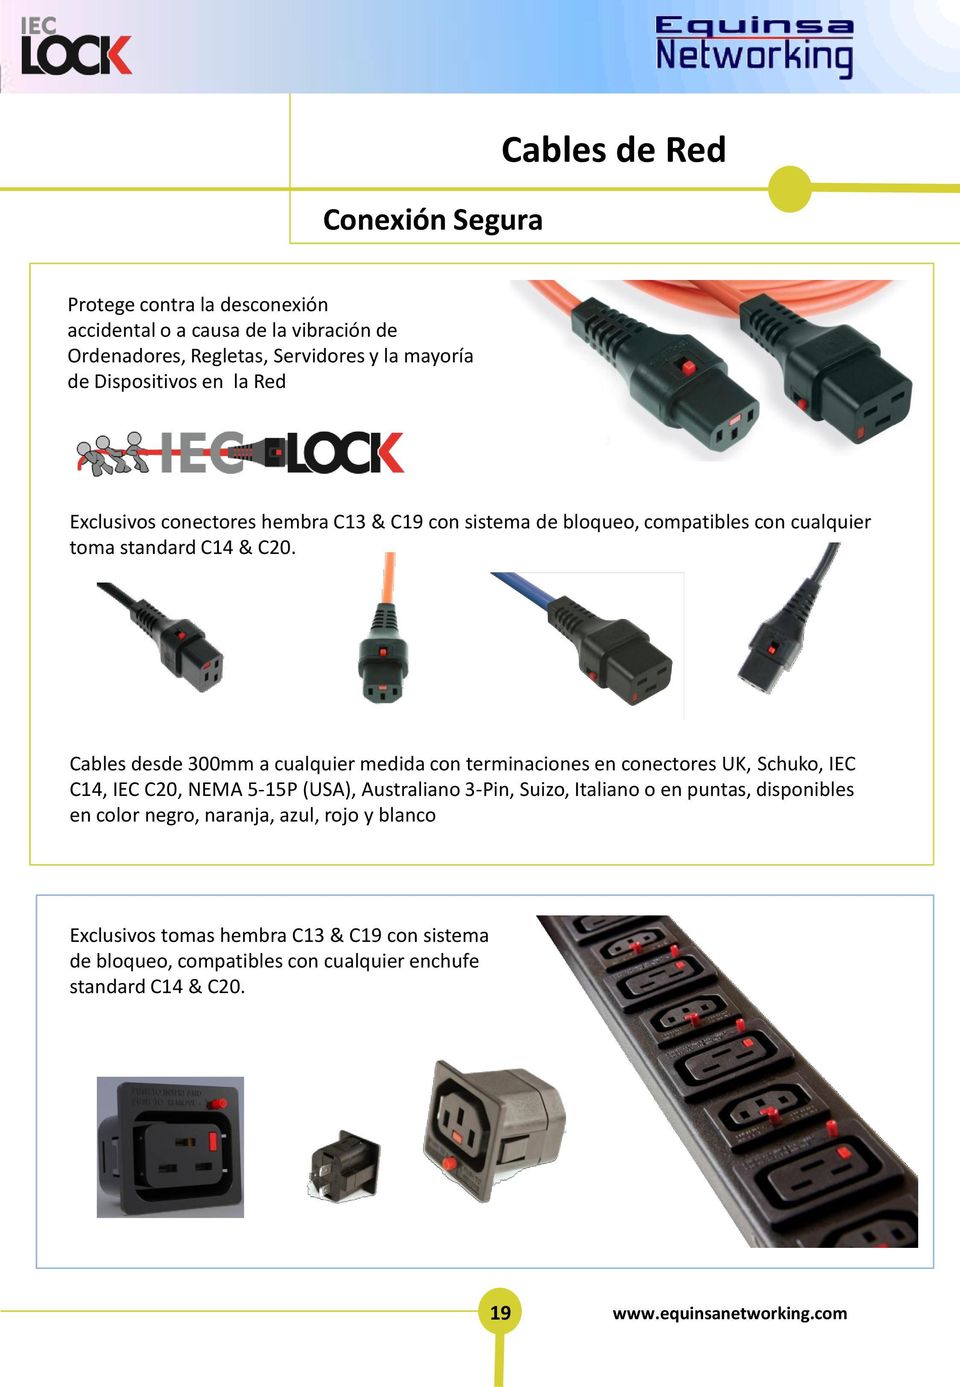 Cables desde 300mm a cualquier medida con terminaciones en conectores UK, Schuko, IEC C14, IEC C20, NEMA 5-15P (USA), Australiano 3-Pin, Suizo, Italiano o